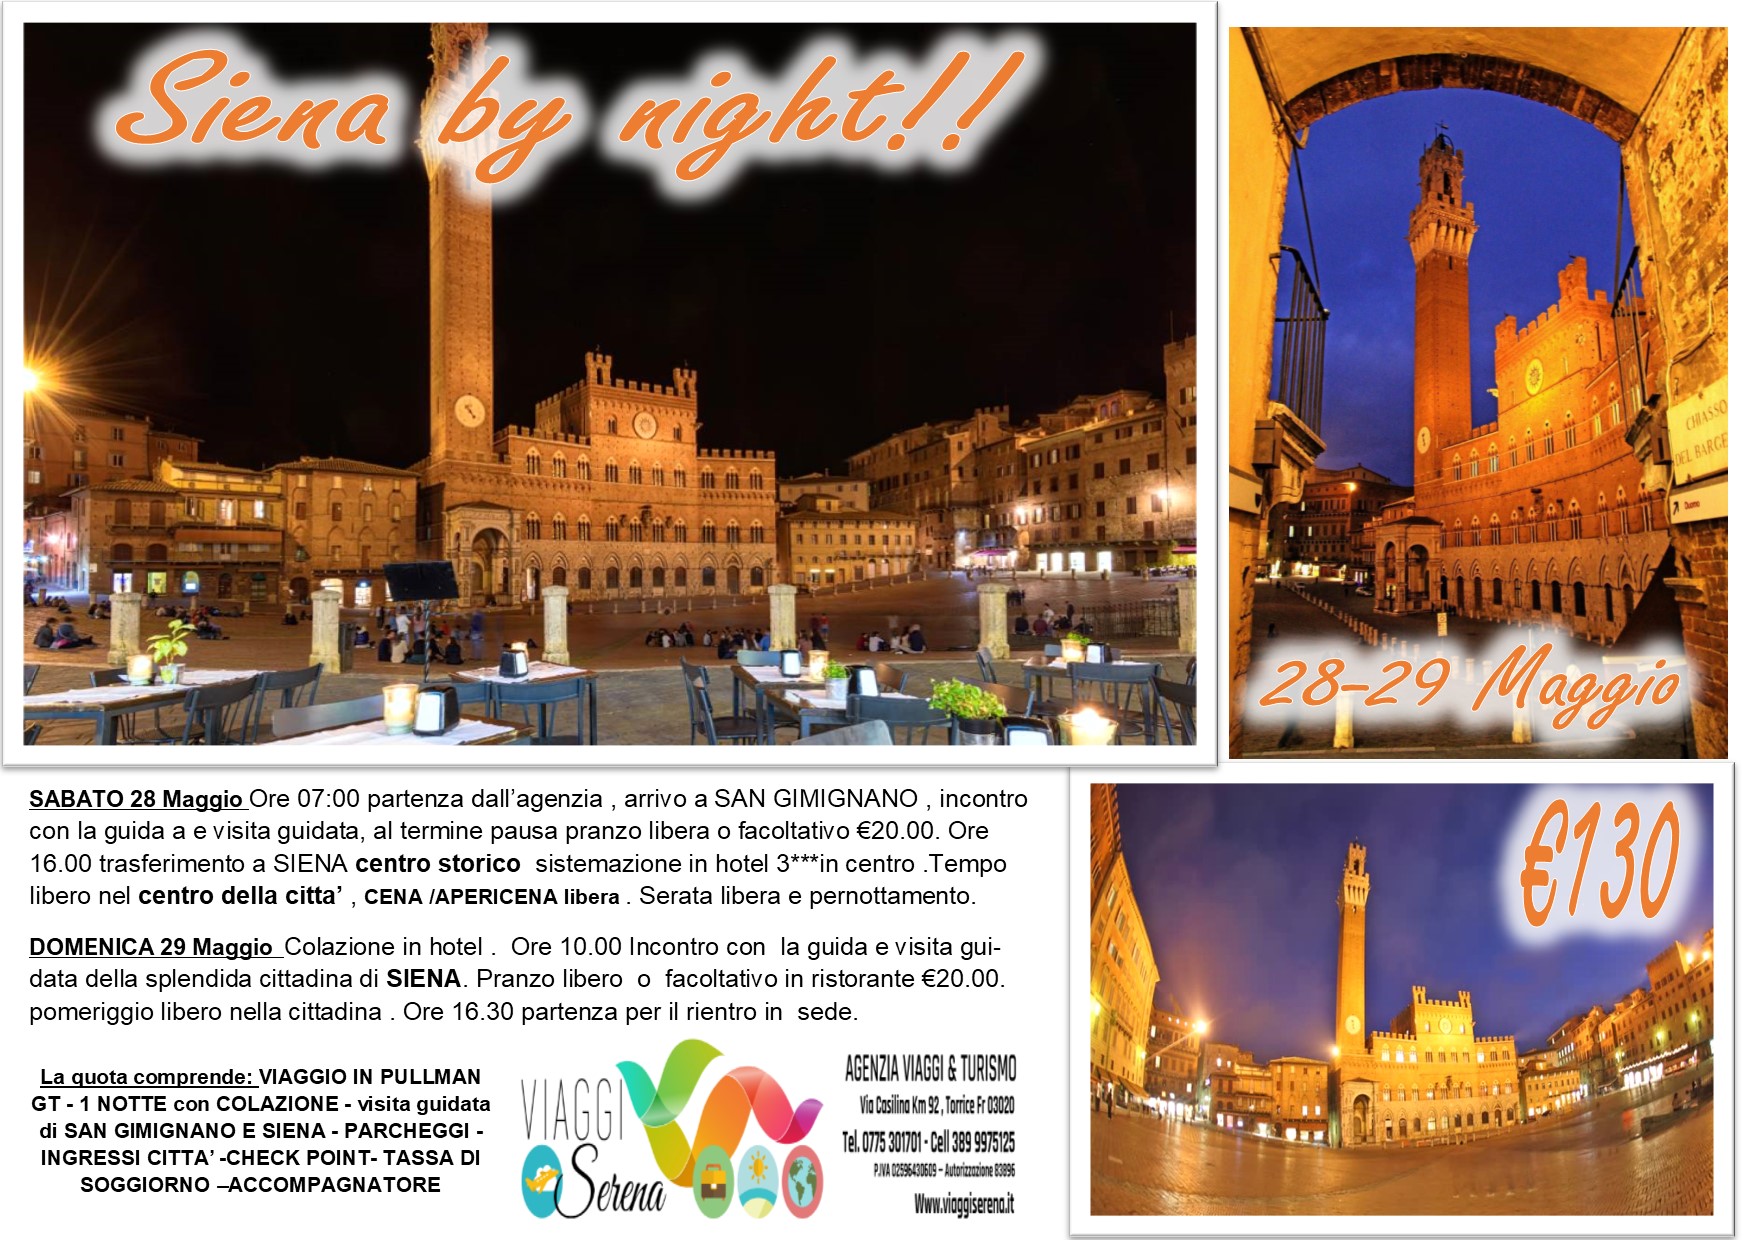 Viaggi di Gruppo: Siena by night & San Gimignano 28-29 Maggio € 130,00